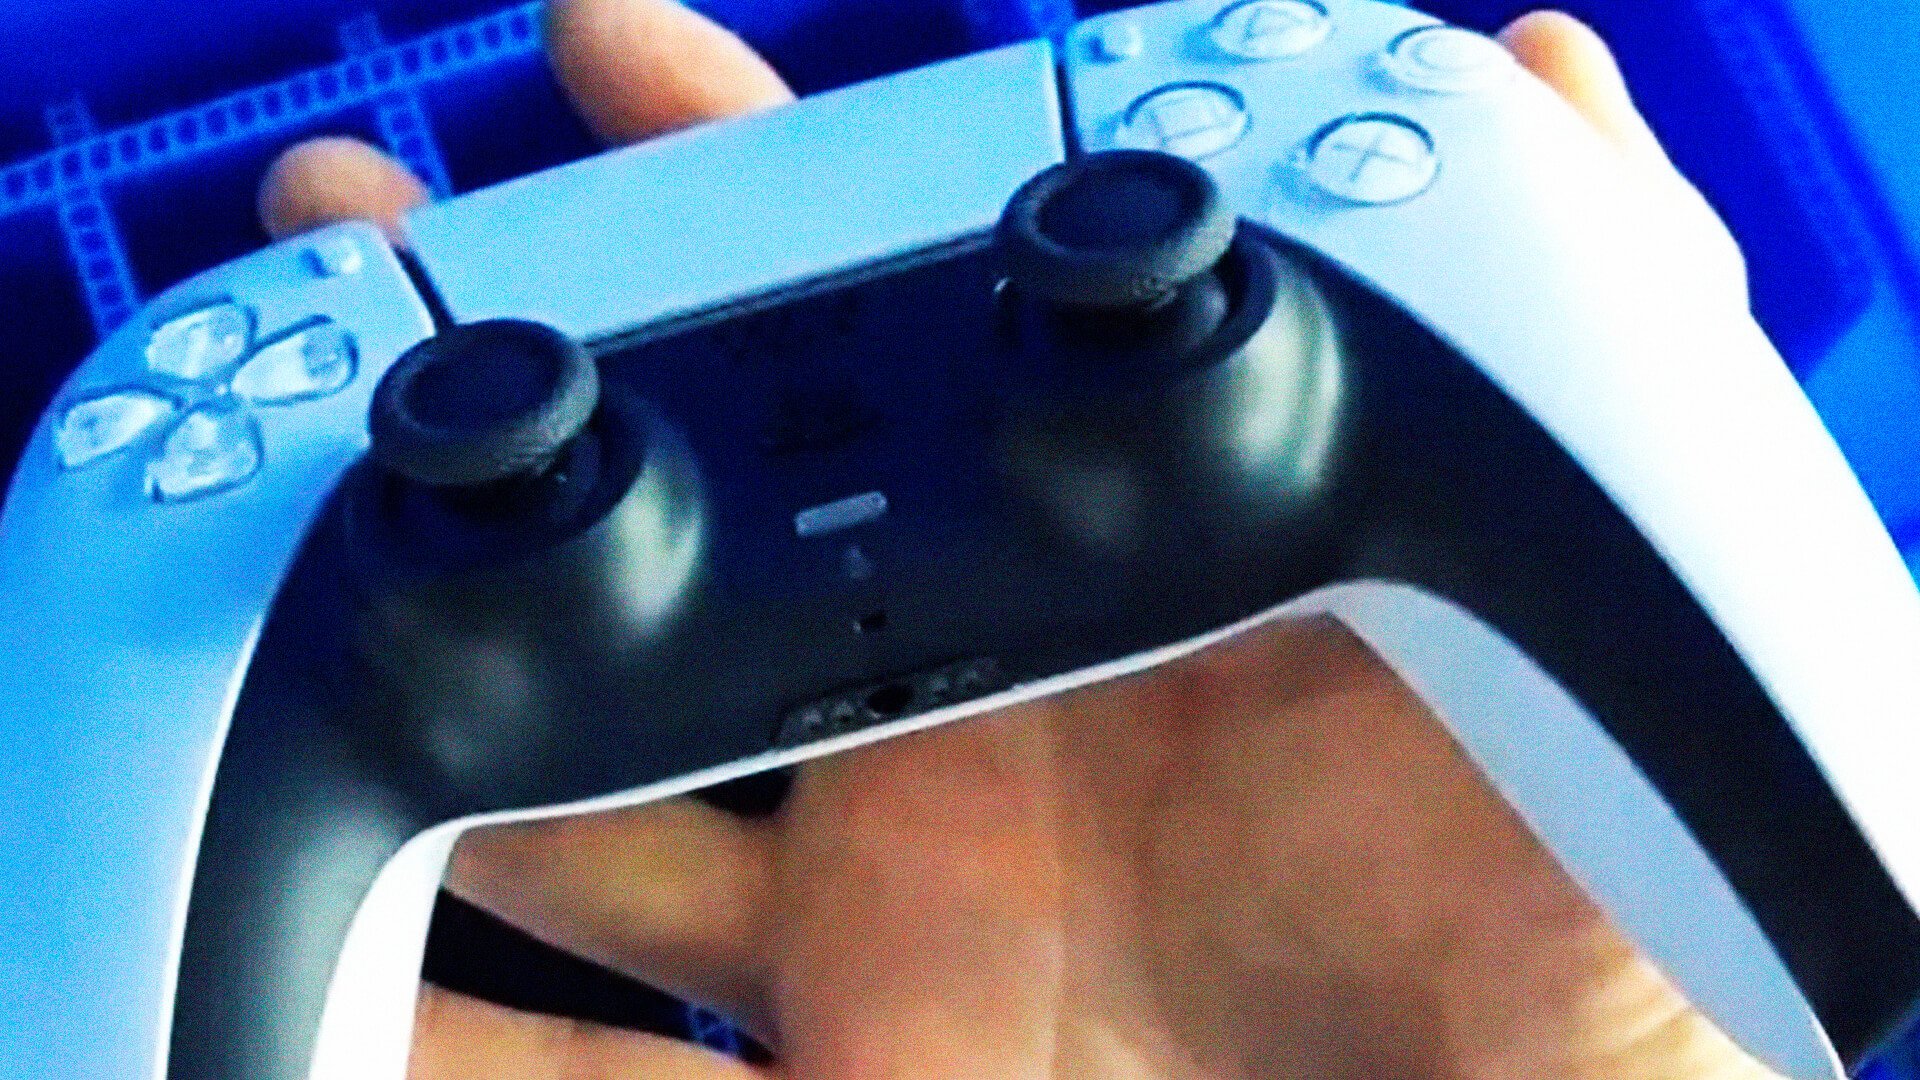 O controle do PlayStation 5 conhecido por DualSense já foi revelado oficialmente com diversas imagens que mostram o formato do mesmo.